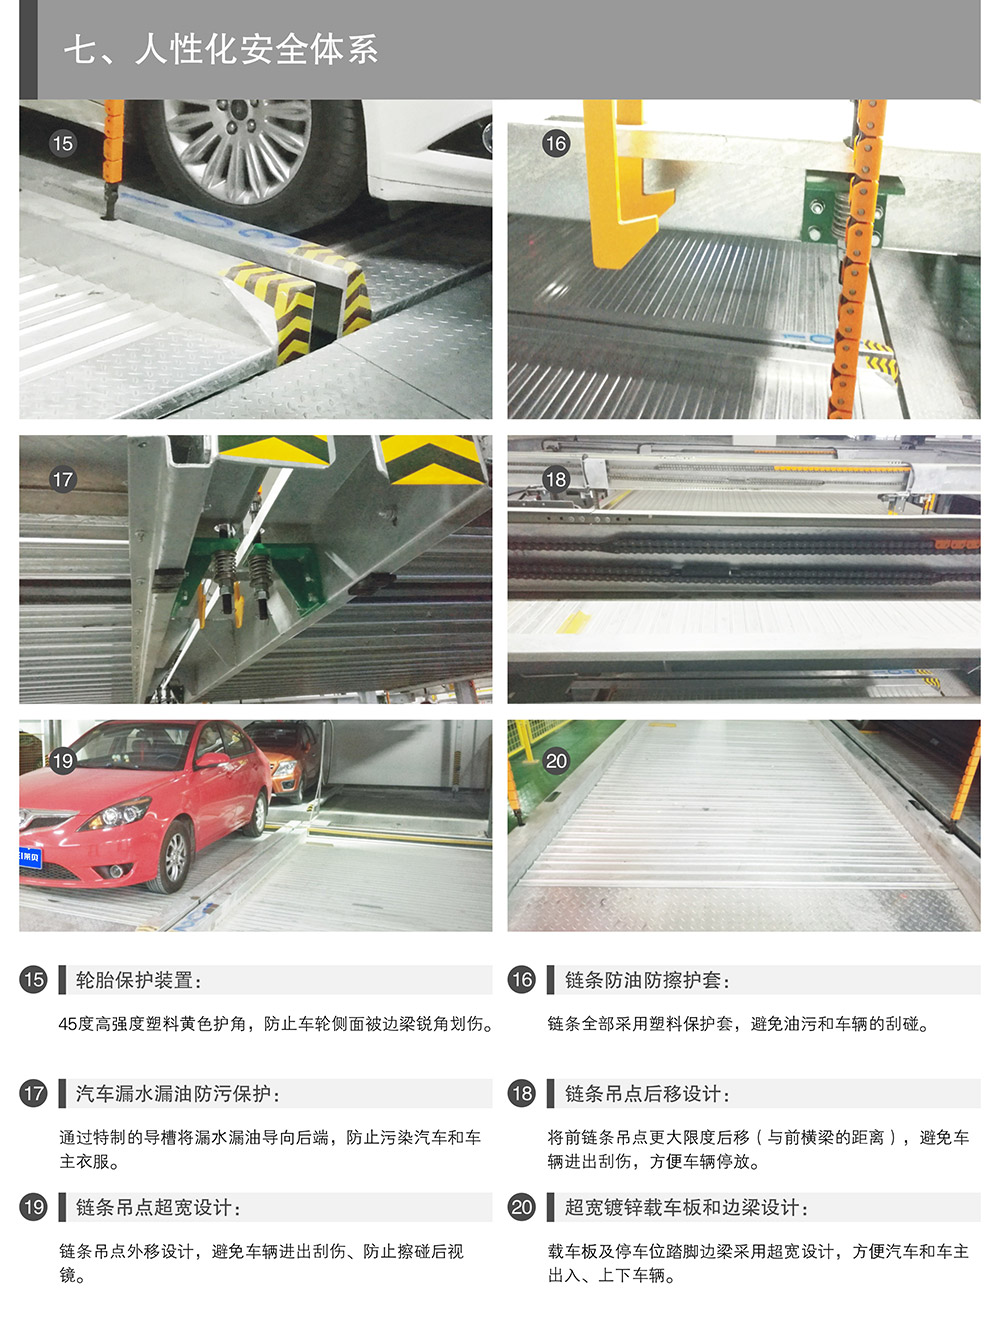 成都重庆PSH升降横移立体车库设备人性化安全体系.jpg